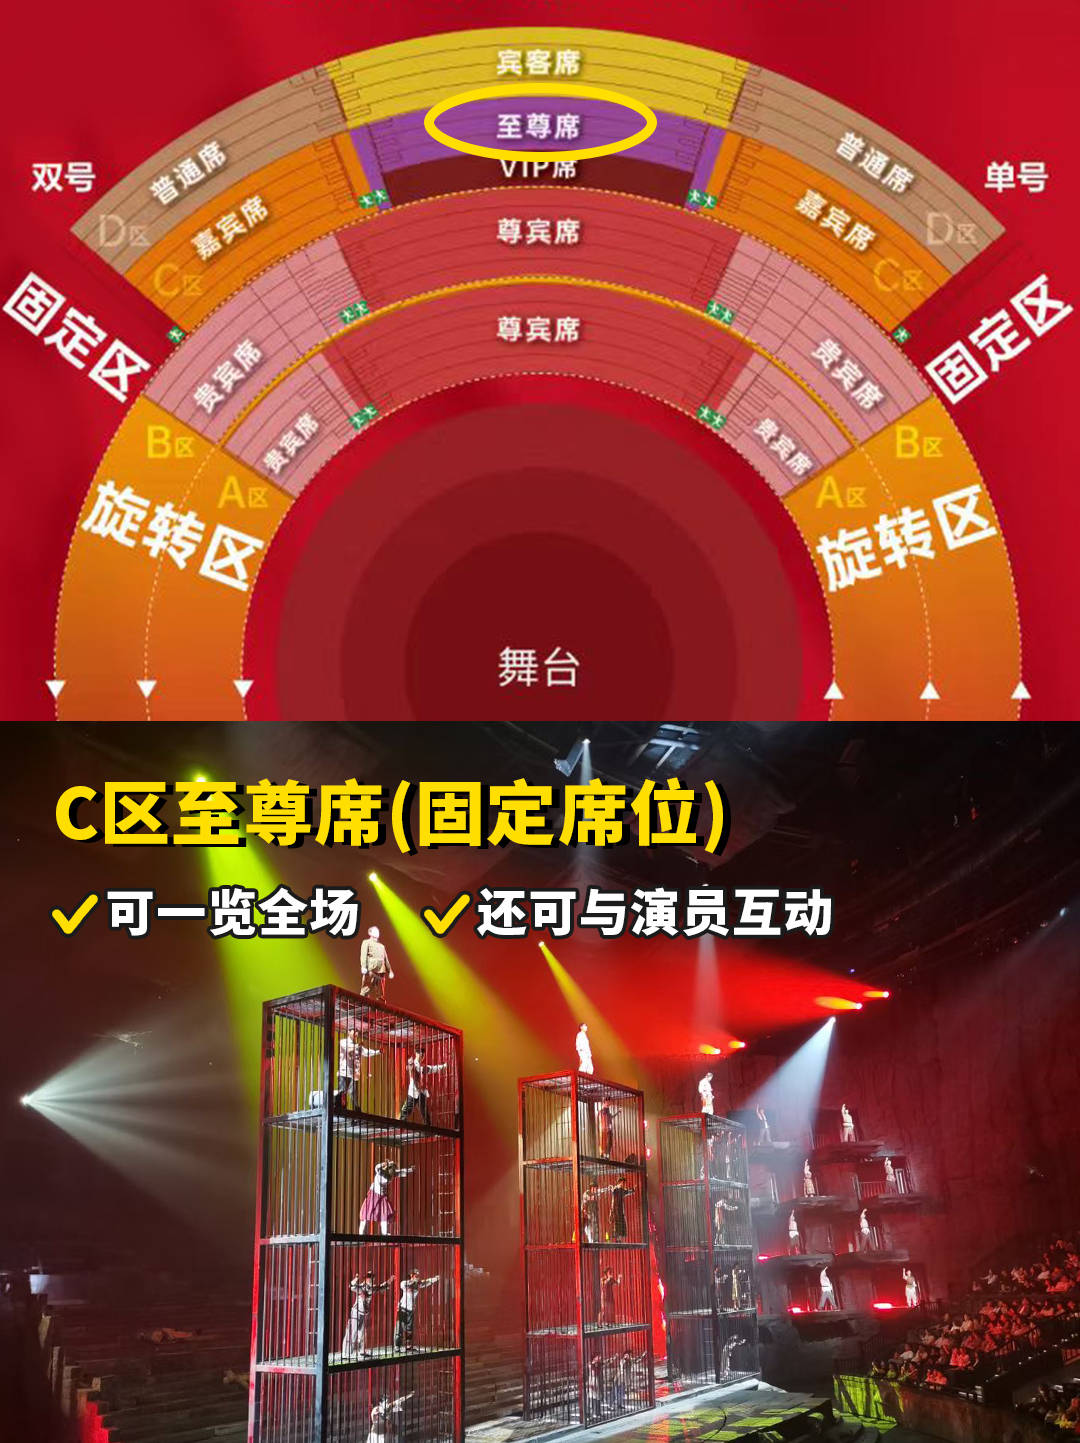 选座攻略:重庆1949大剧院选座选a区还是b区?